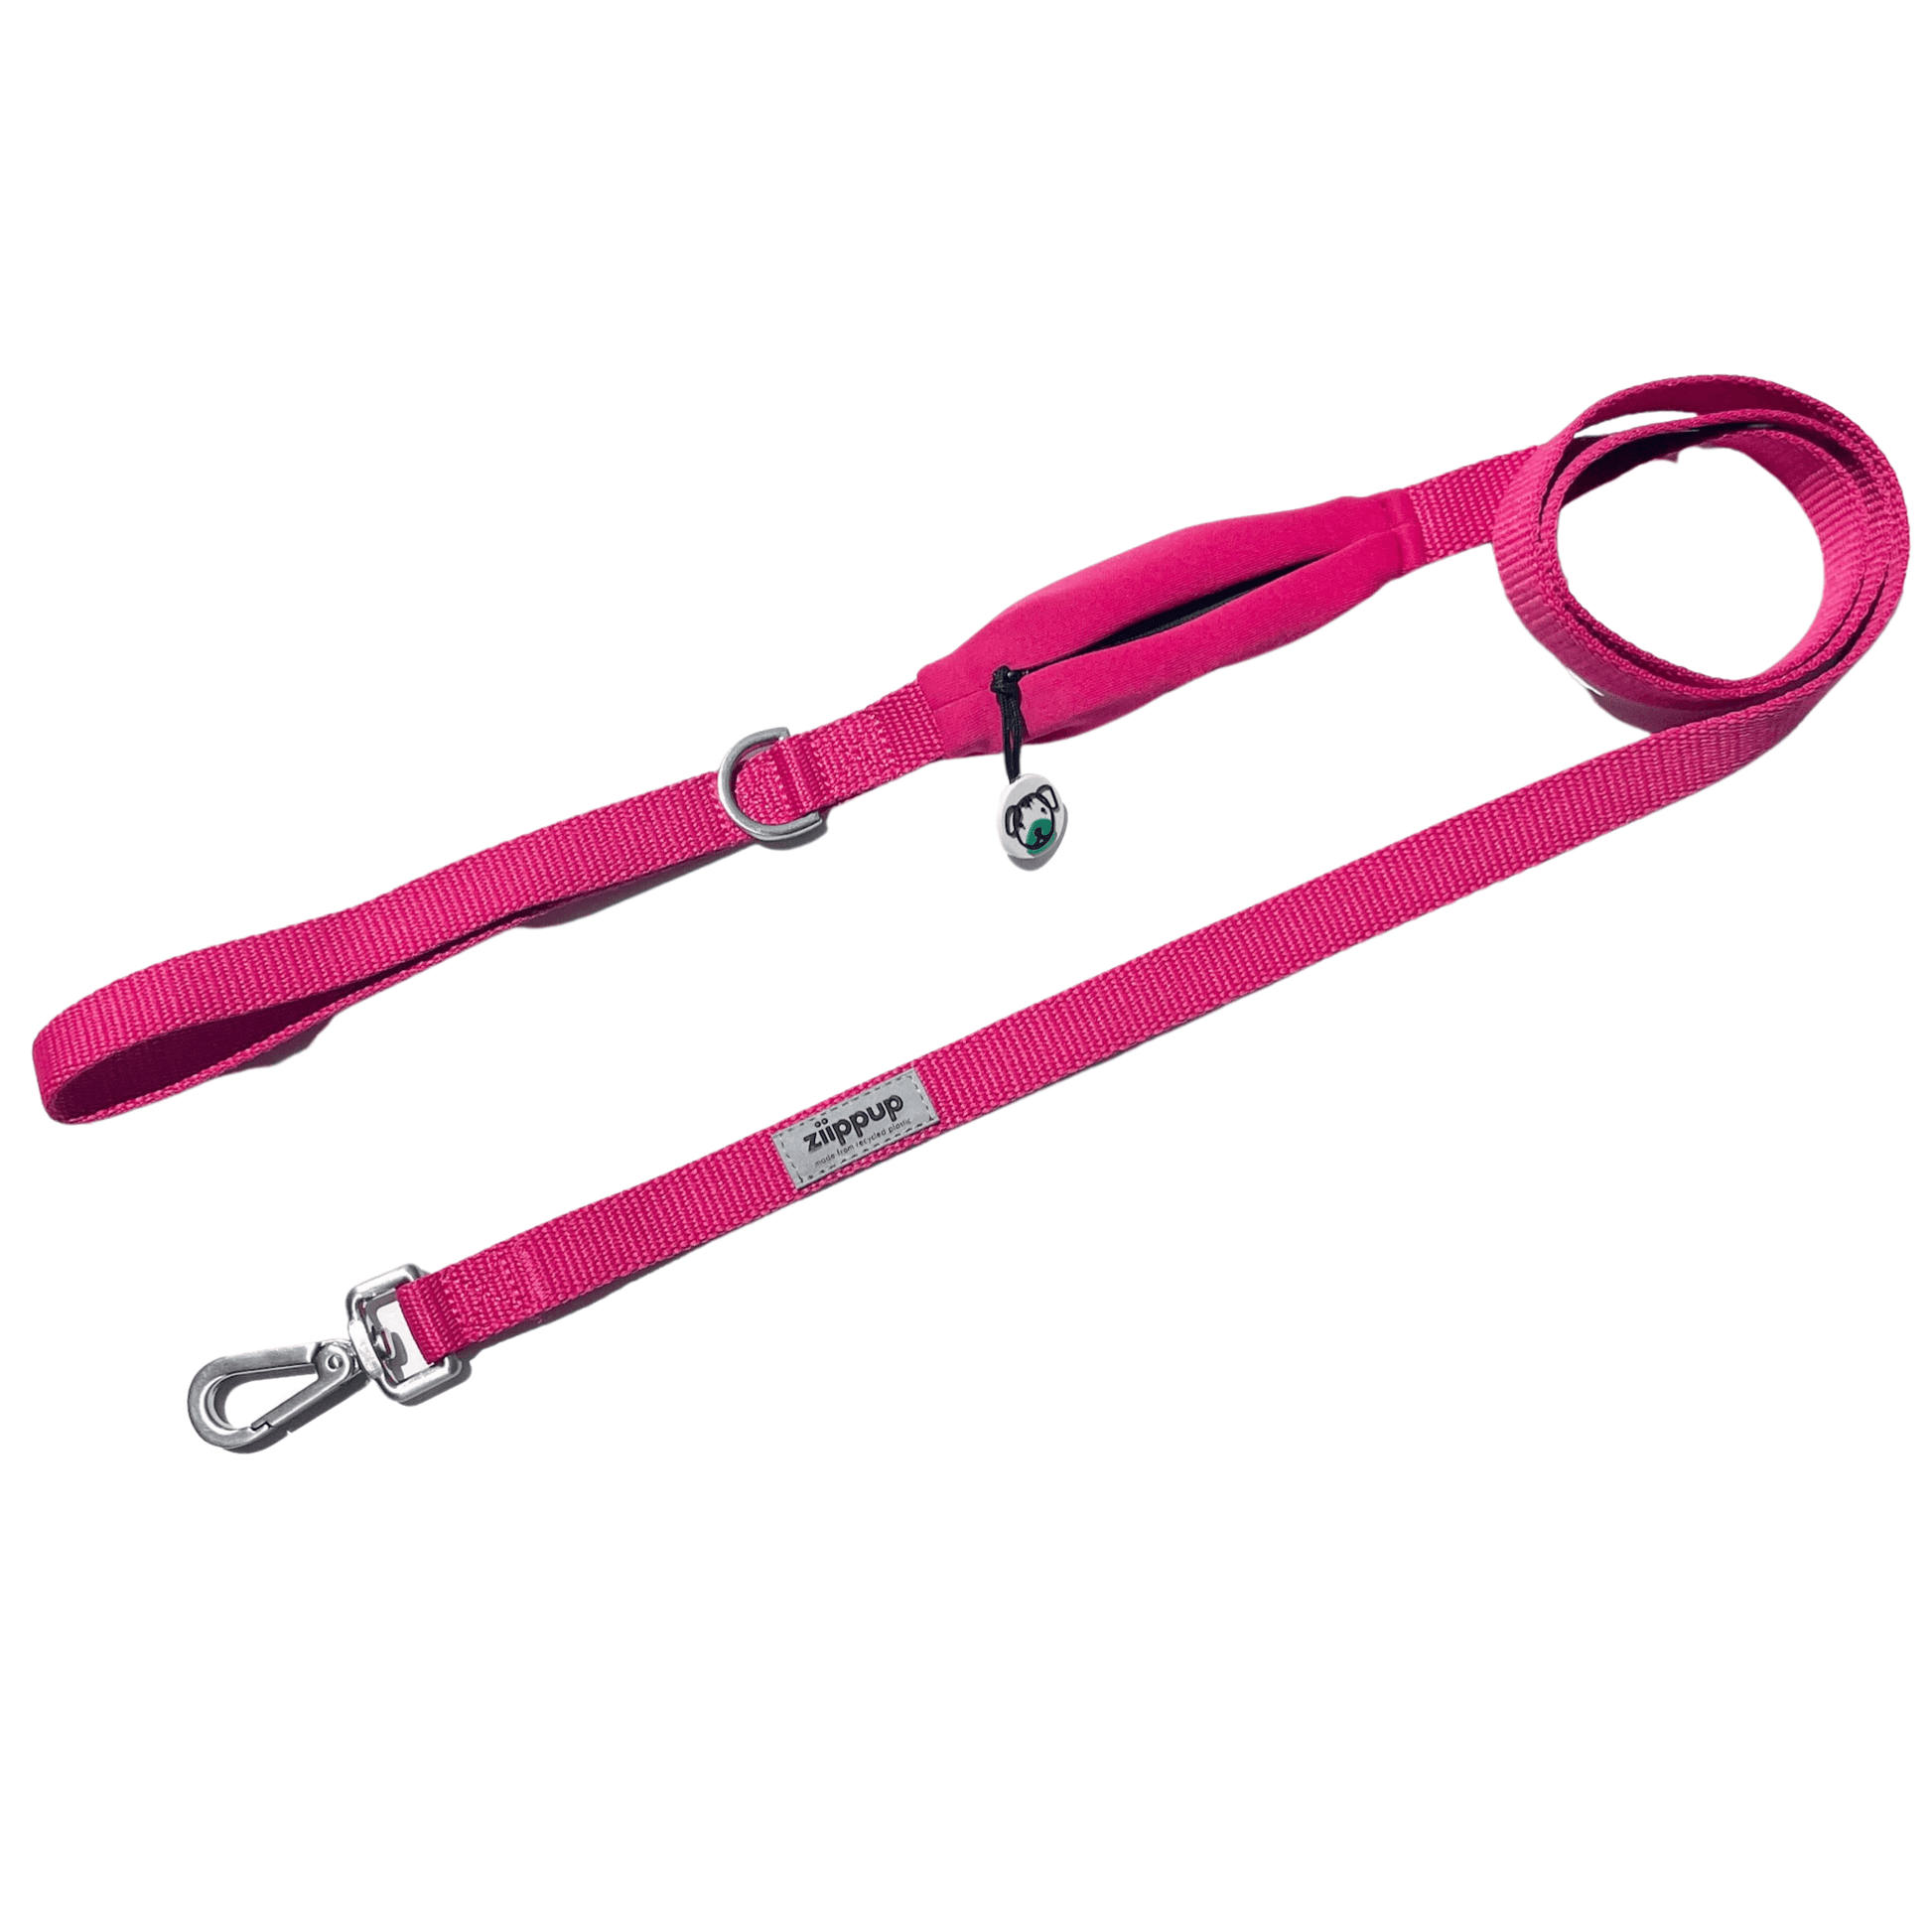 Pink dog lead with poop bag holder